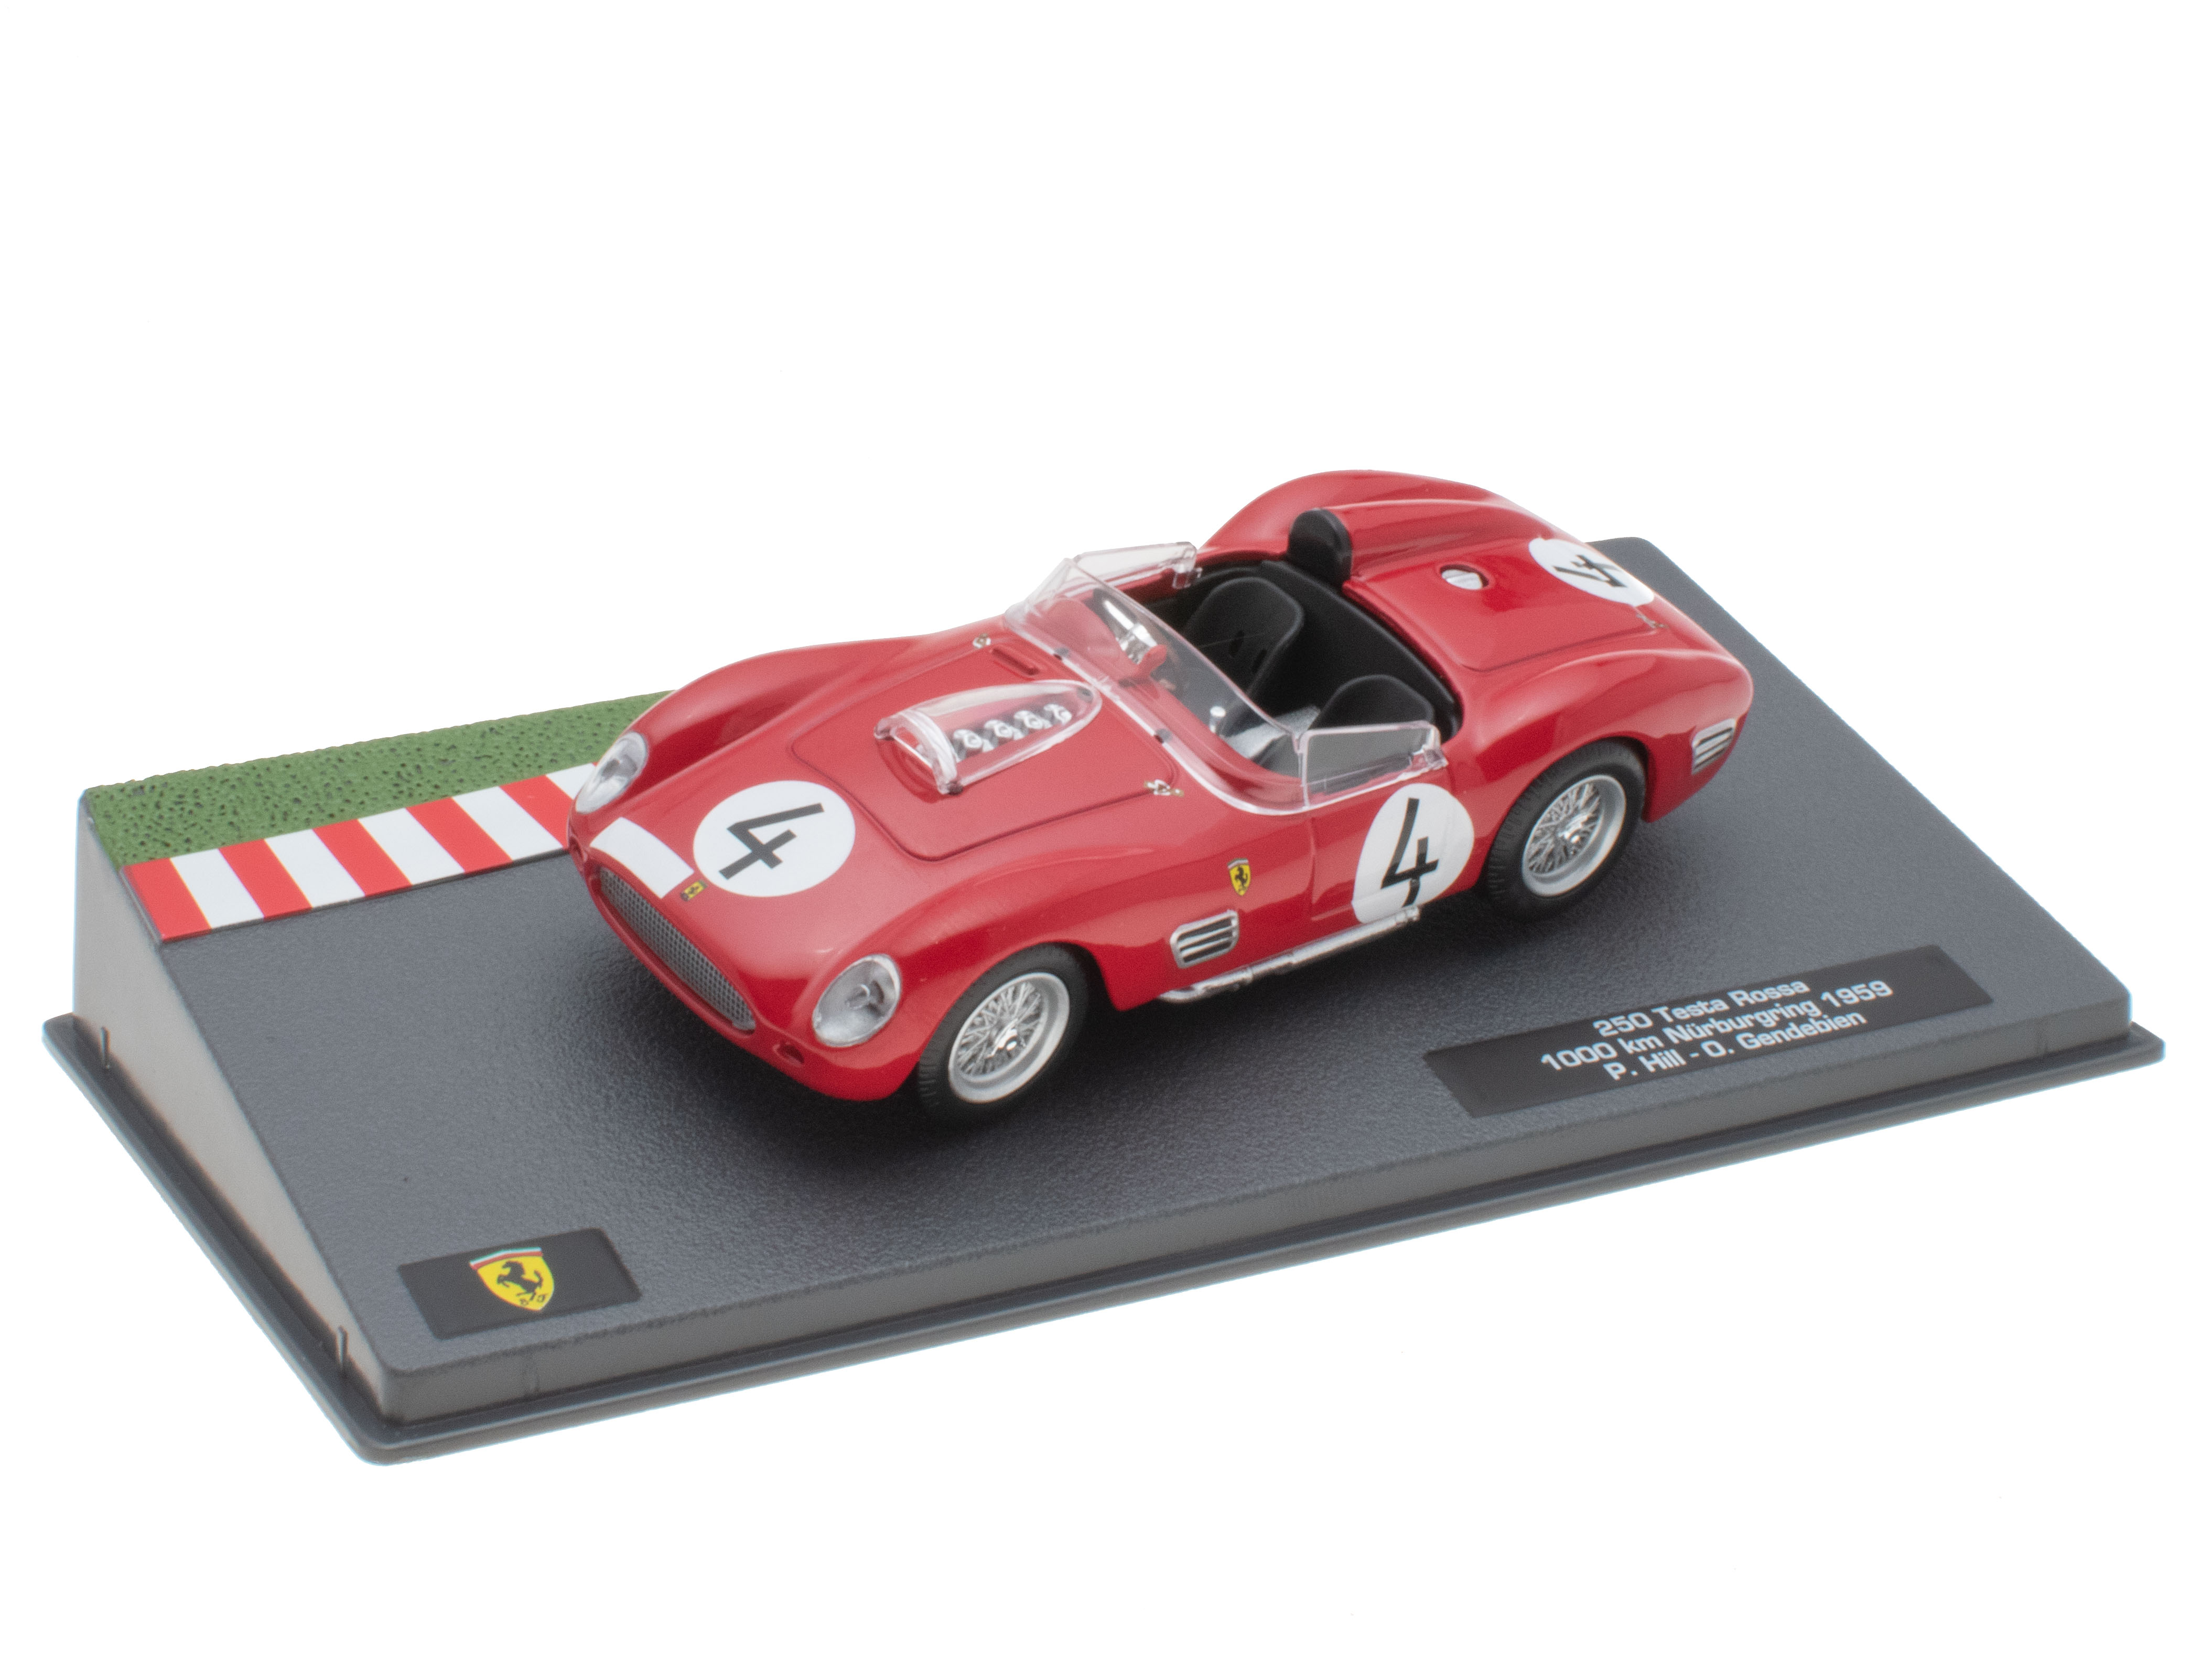 250 Testa Rossa - 1000 km Nürburgring 1959 - P. Hill - O. Gendebien